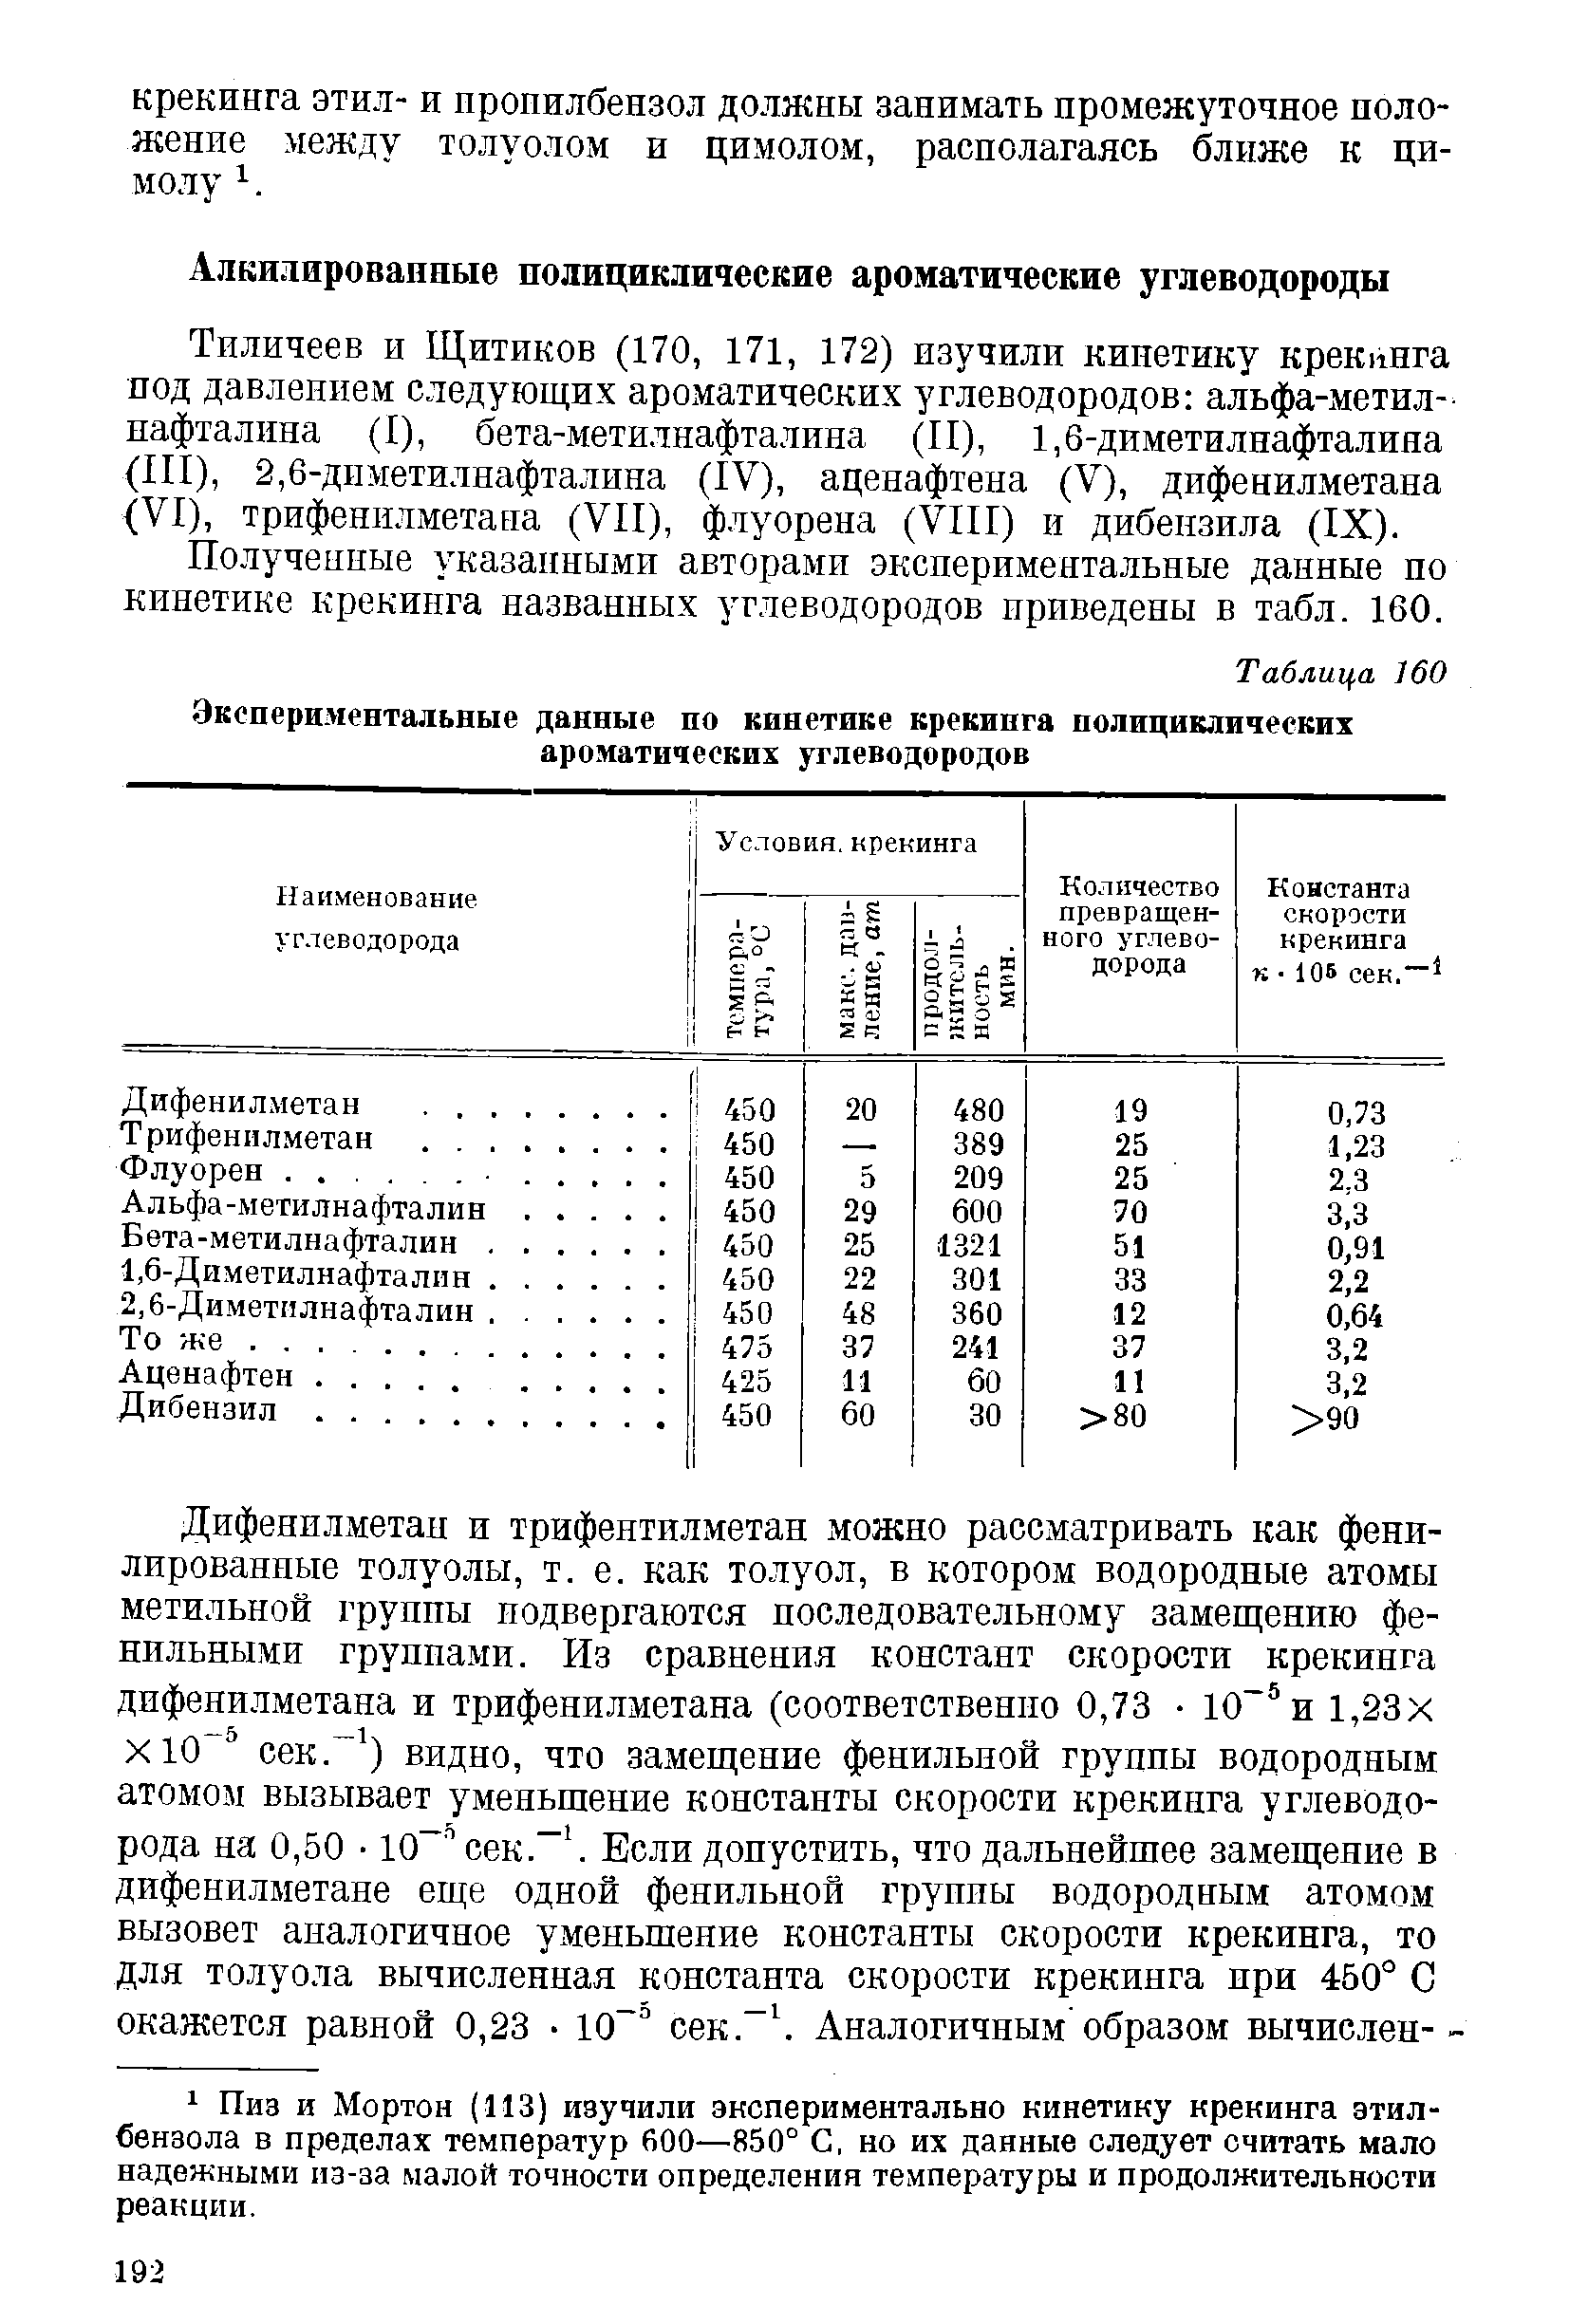 Получеииые указанными авторами экспериментальные данные по кинетике крекинга названных углеводородов приведены в табл. 160.